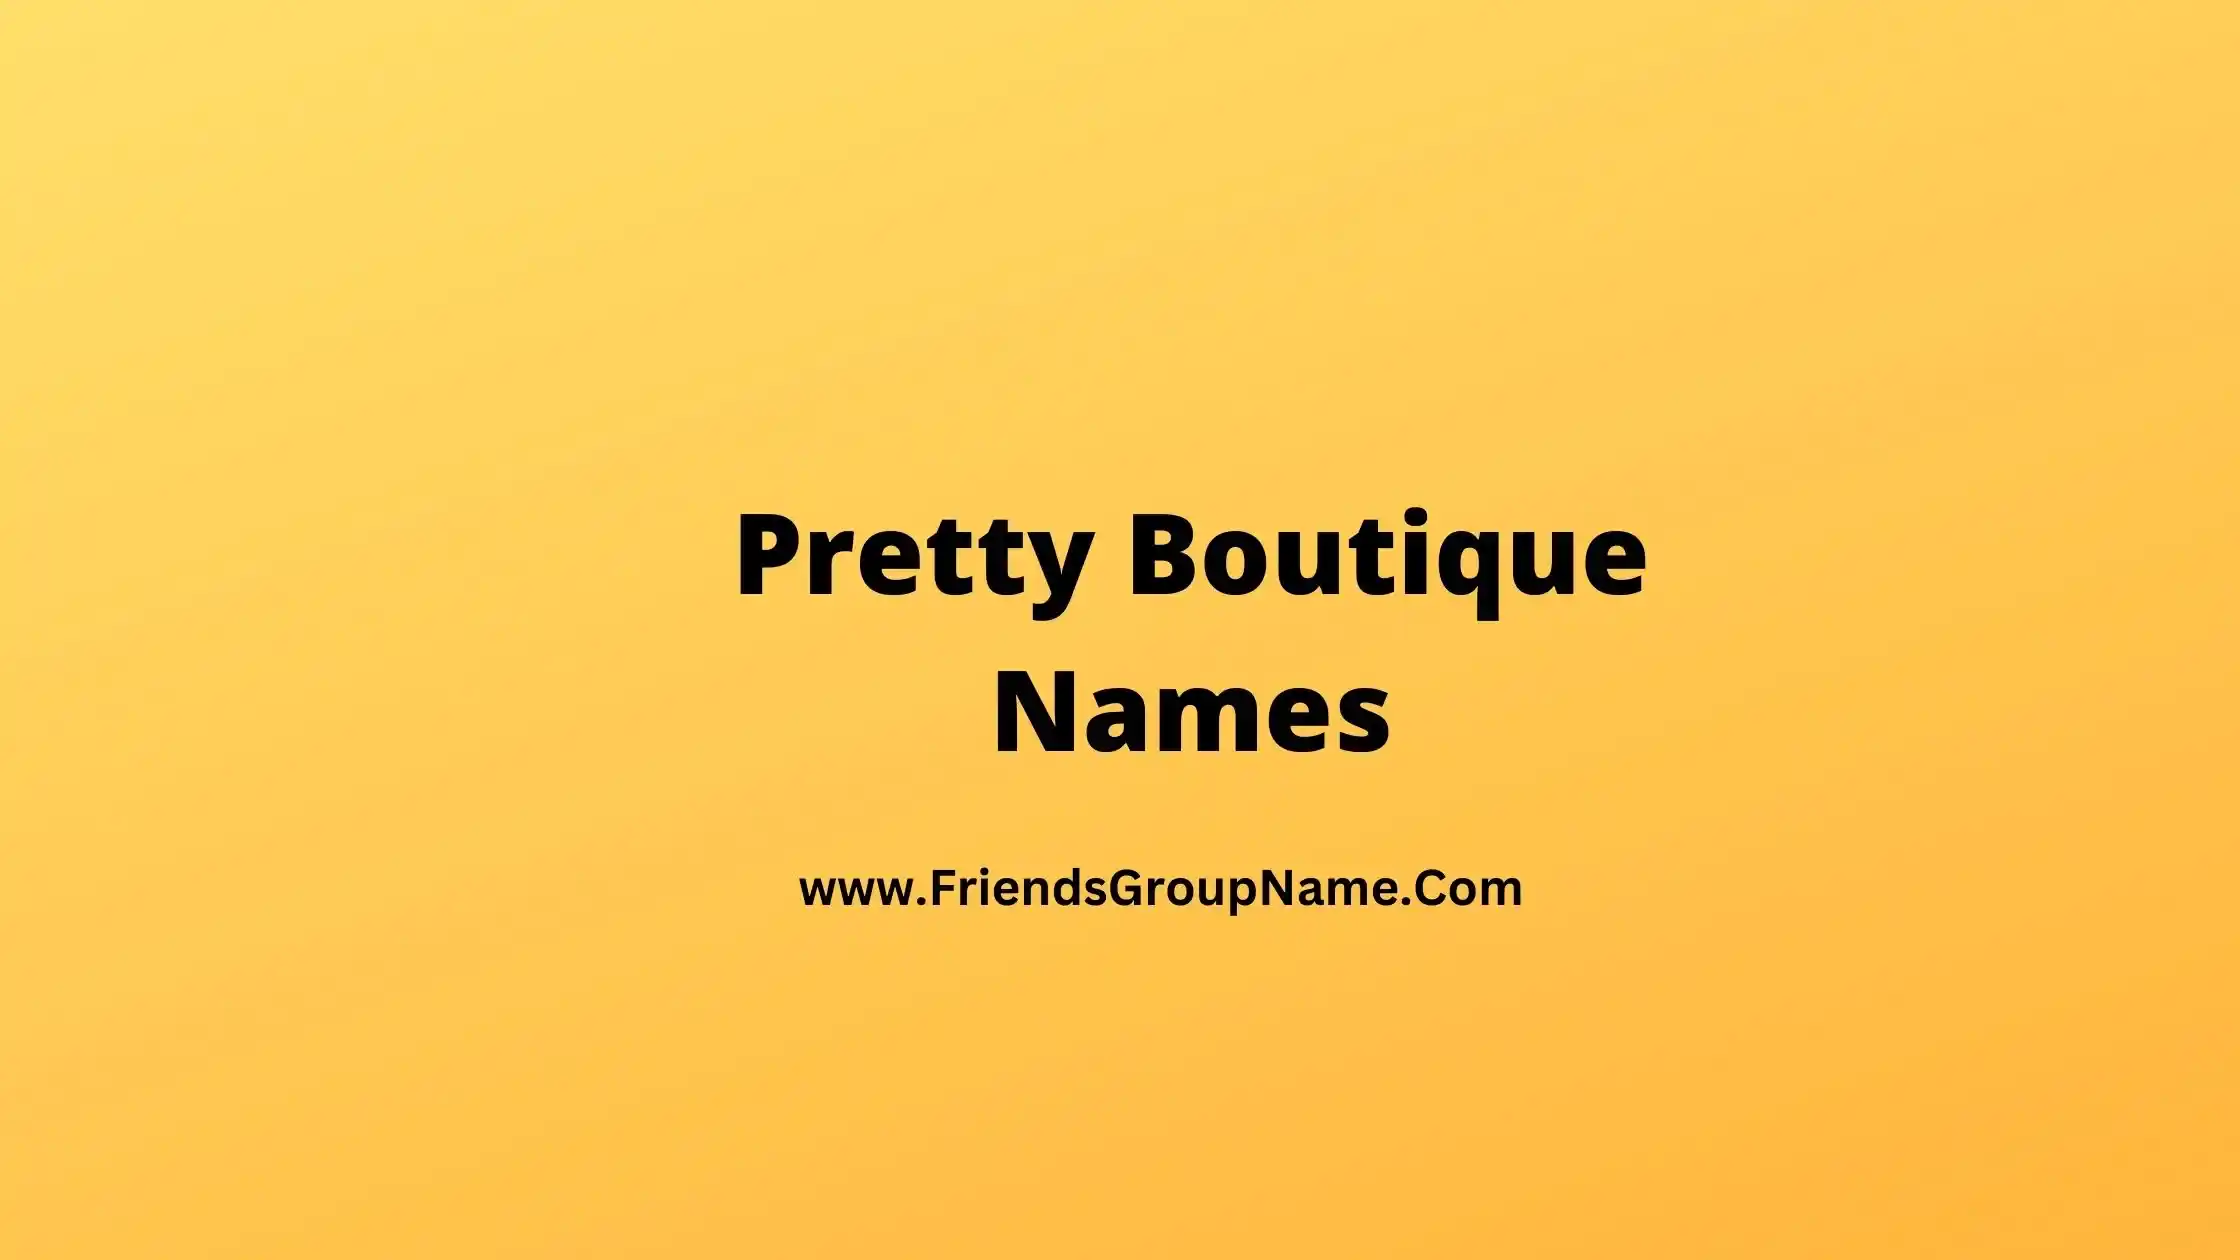 Pretty Boutique Names